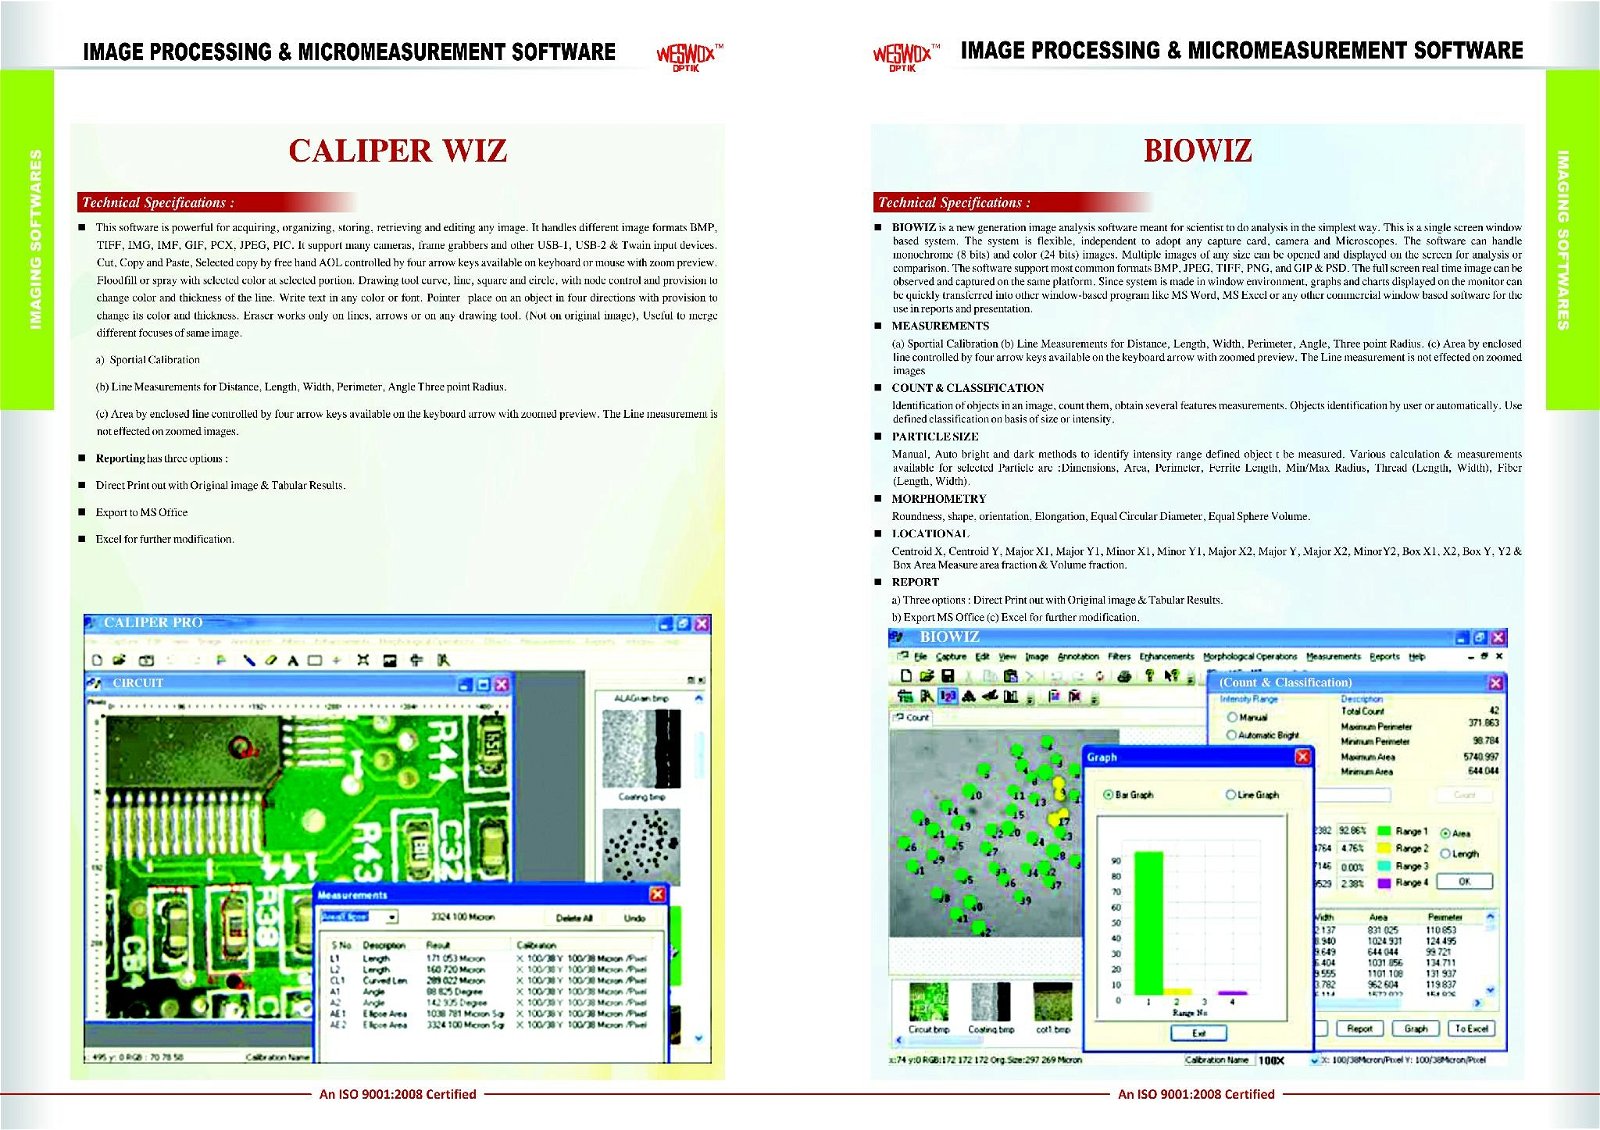 Caliper Image Analysis & Measurement Software